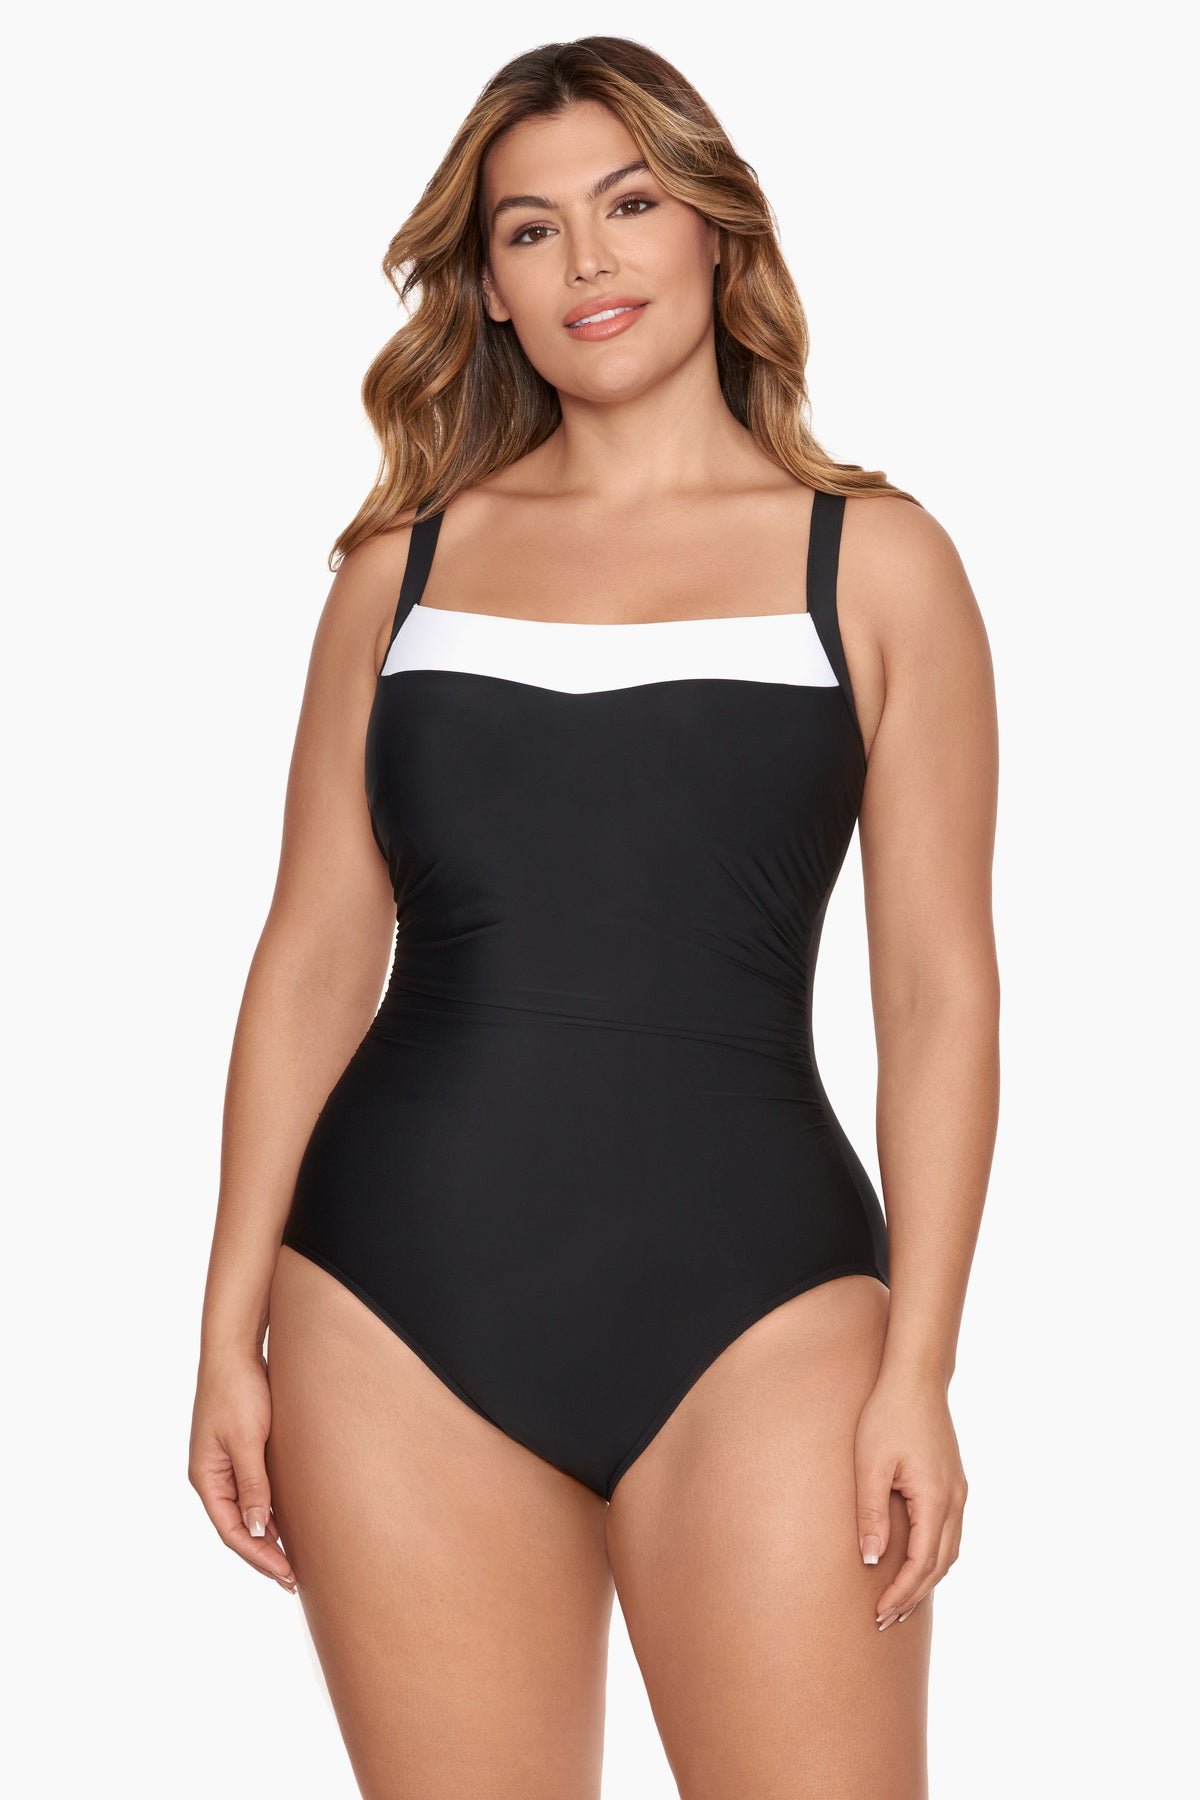 Speedo Women's Hydra Fizz High Neck Swimsuit Grey/Black small BNWT New with  tags